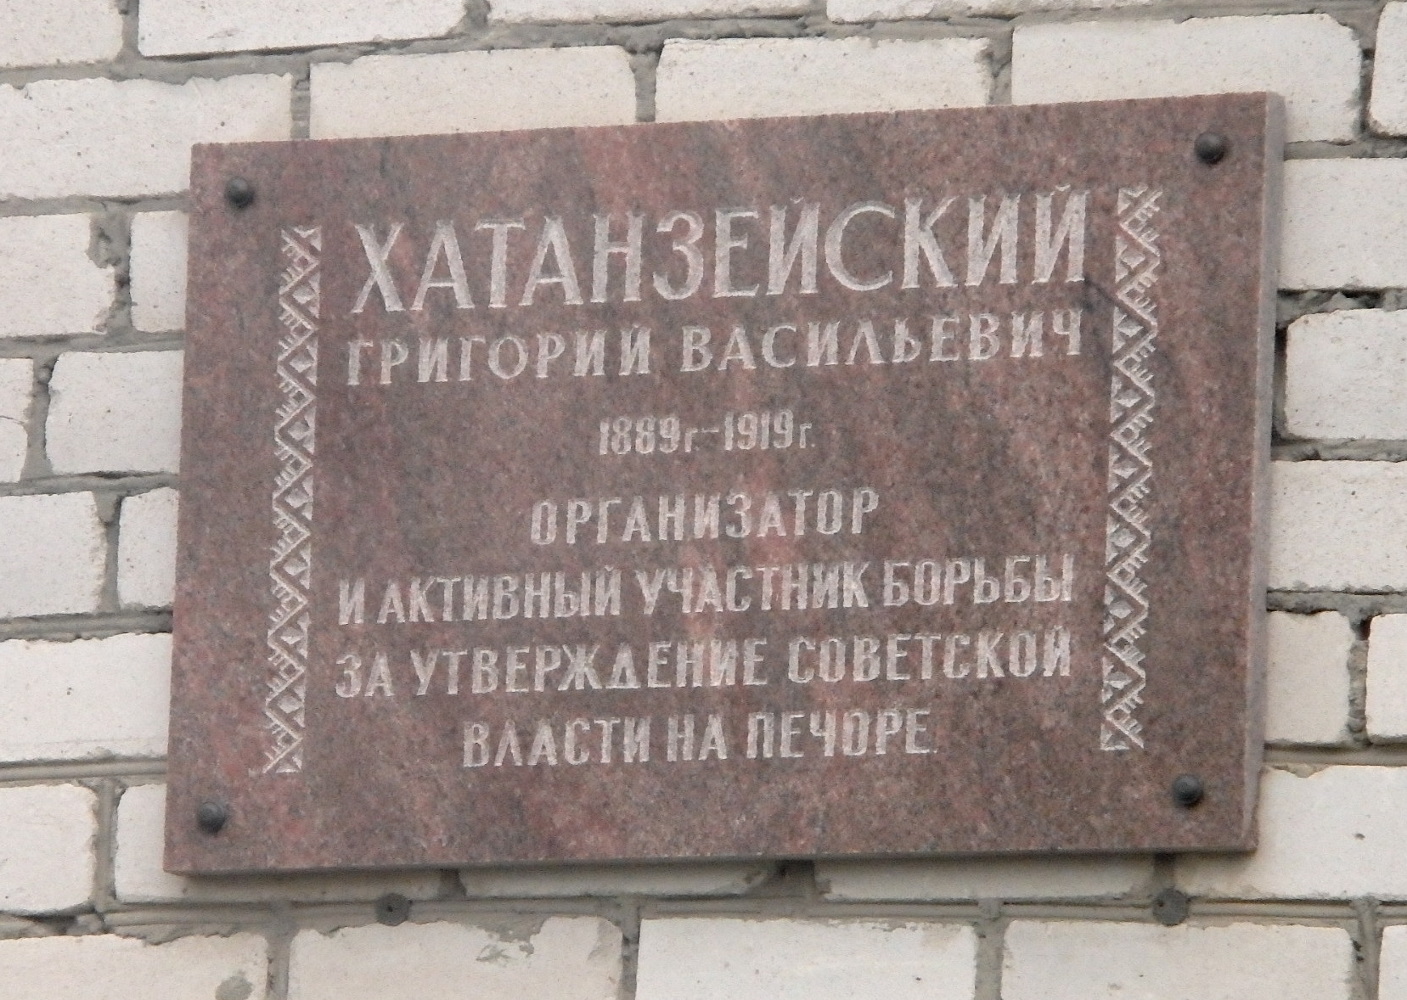 Naryan-Mar, Улица Выучейского, 6 / Улица Хатанзейского, 8. Naryan-Mar — Memorial plaques